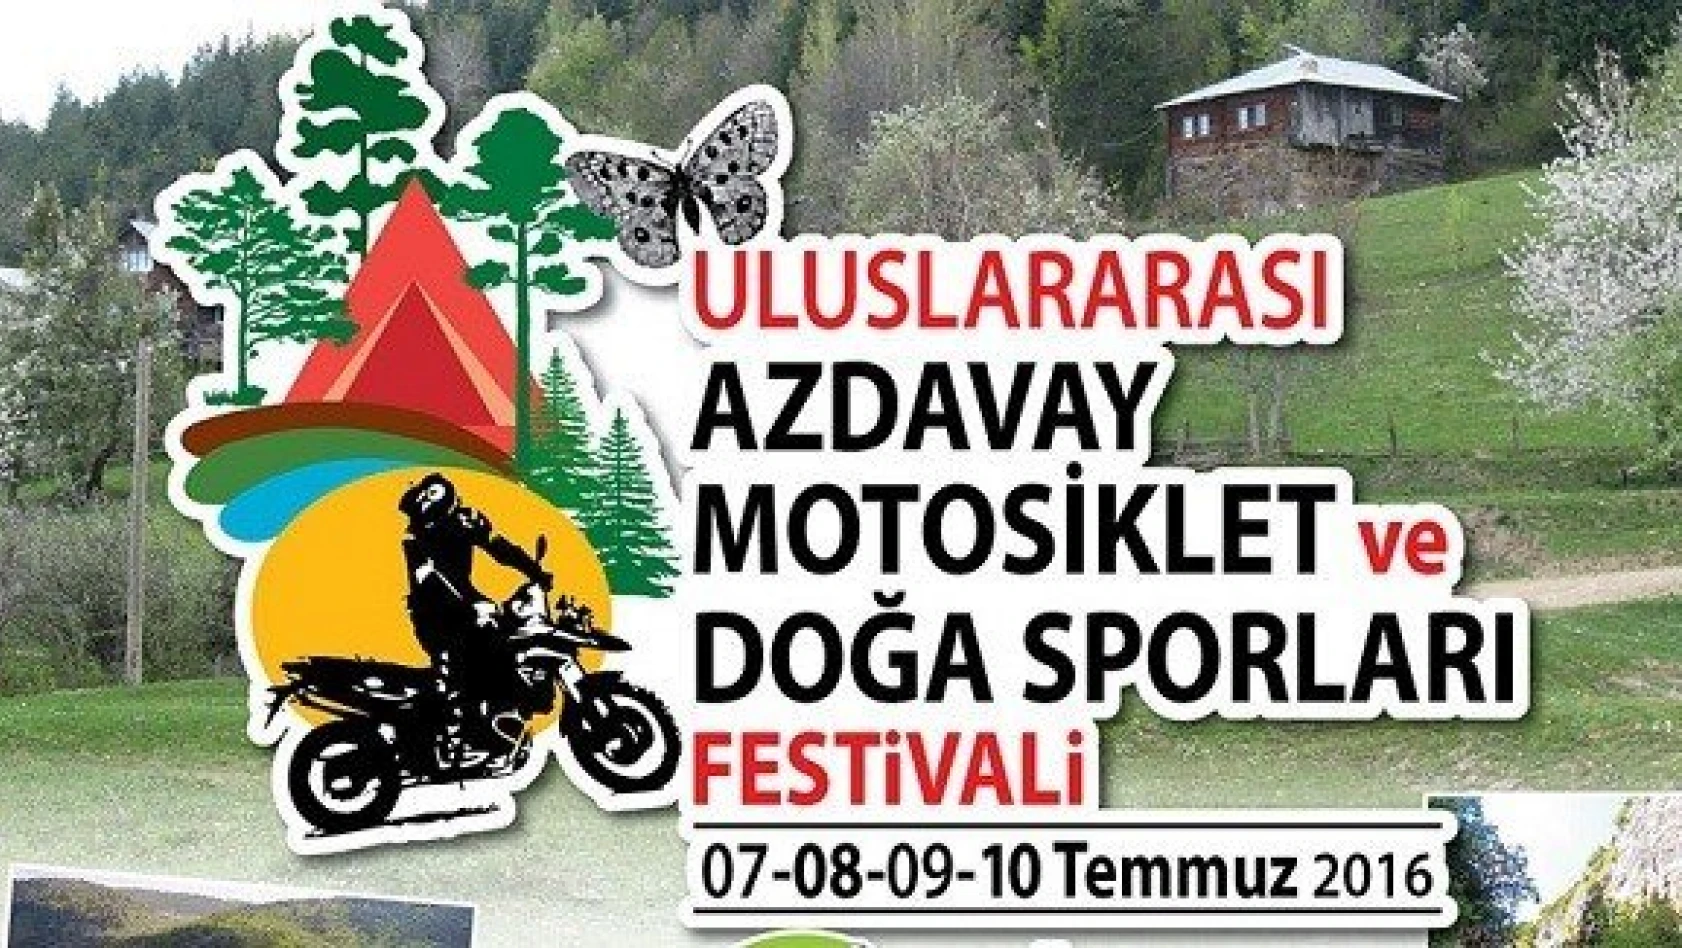 Uluslararası Motosiklet Festivali Azdavay'da 